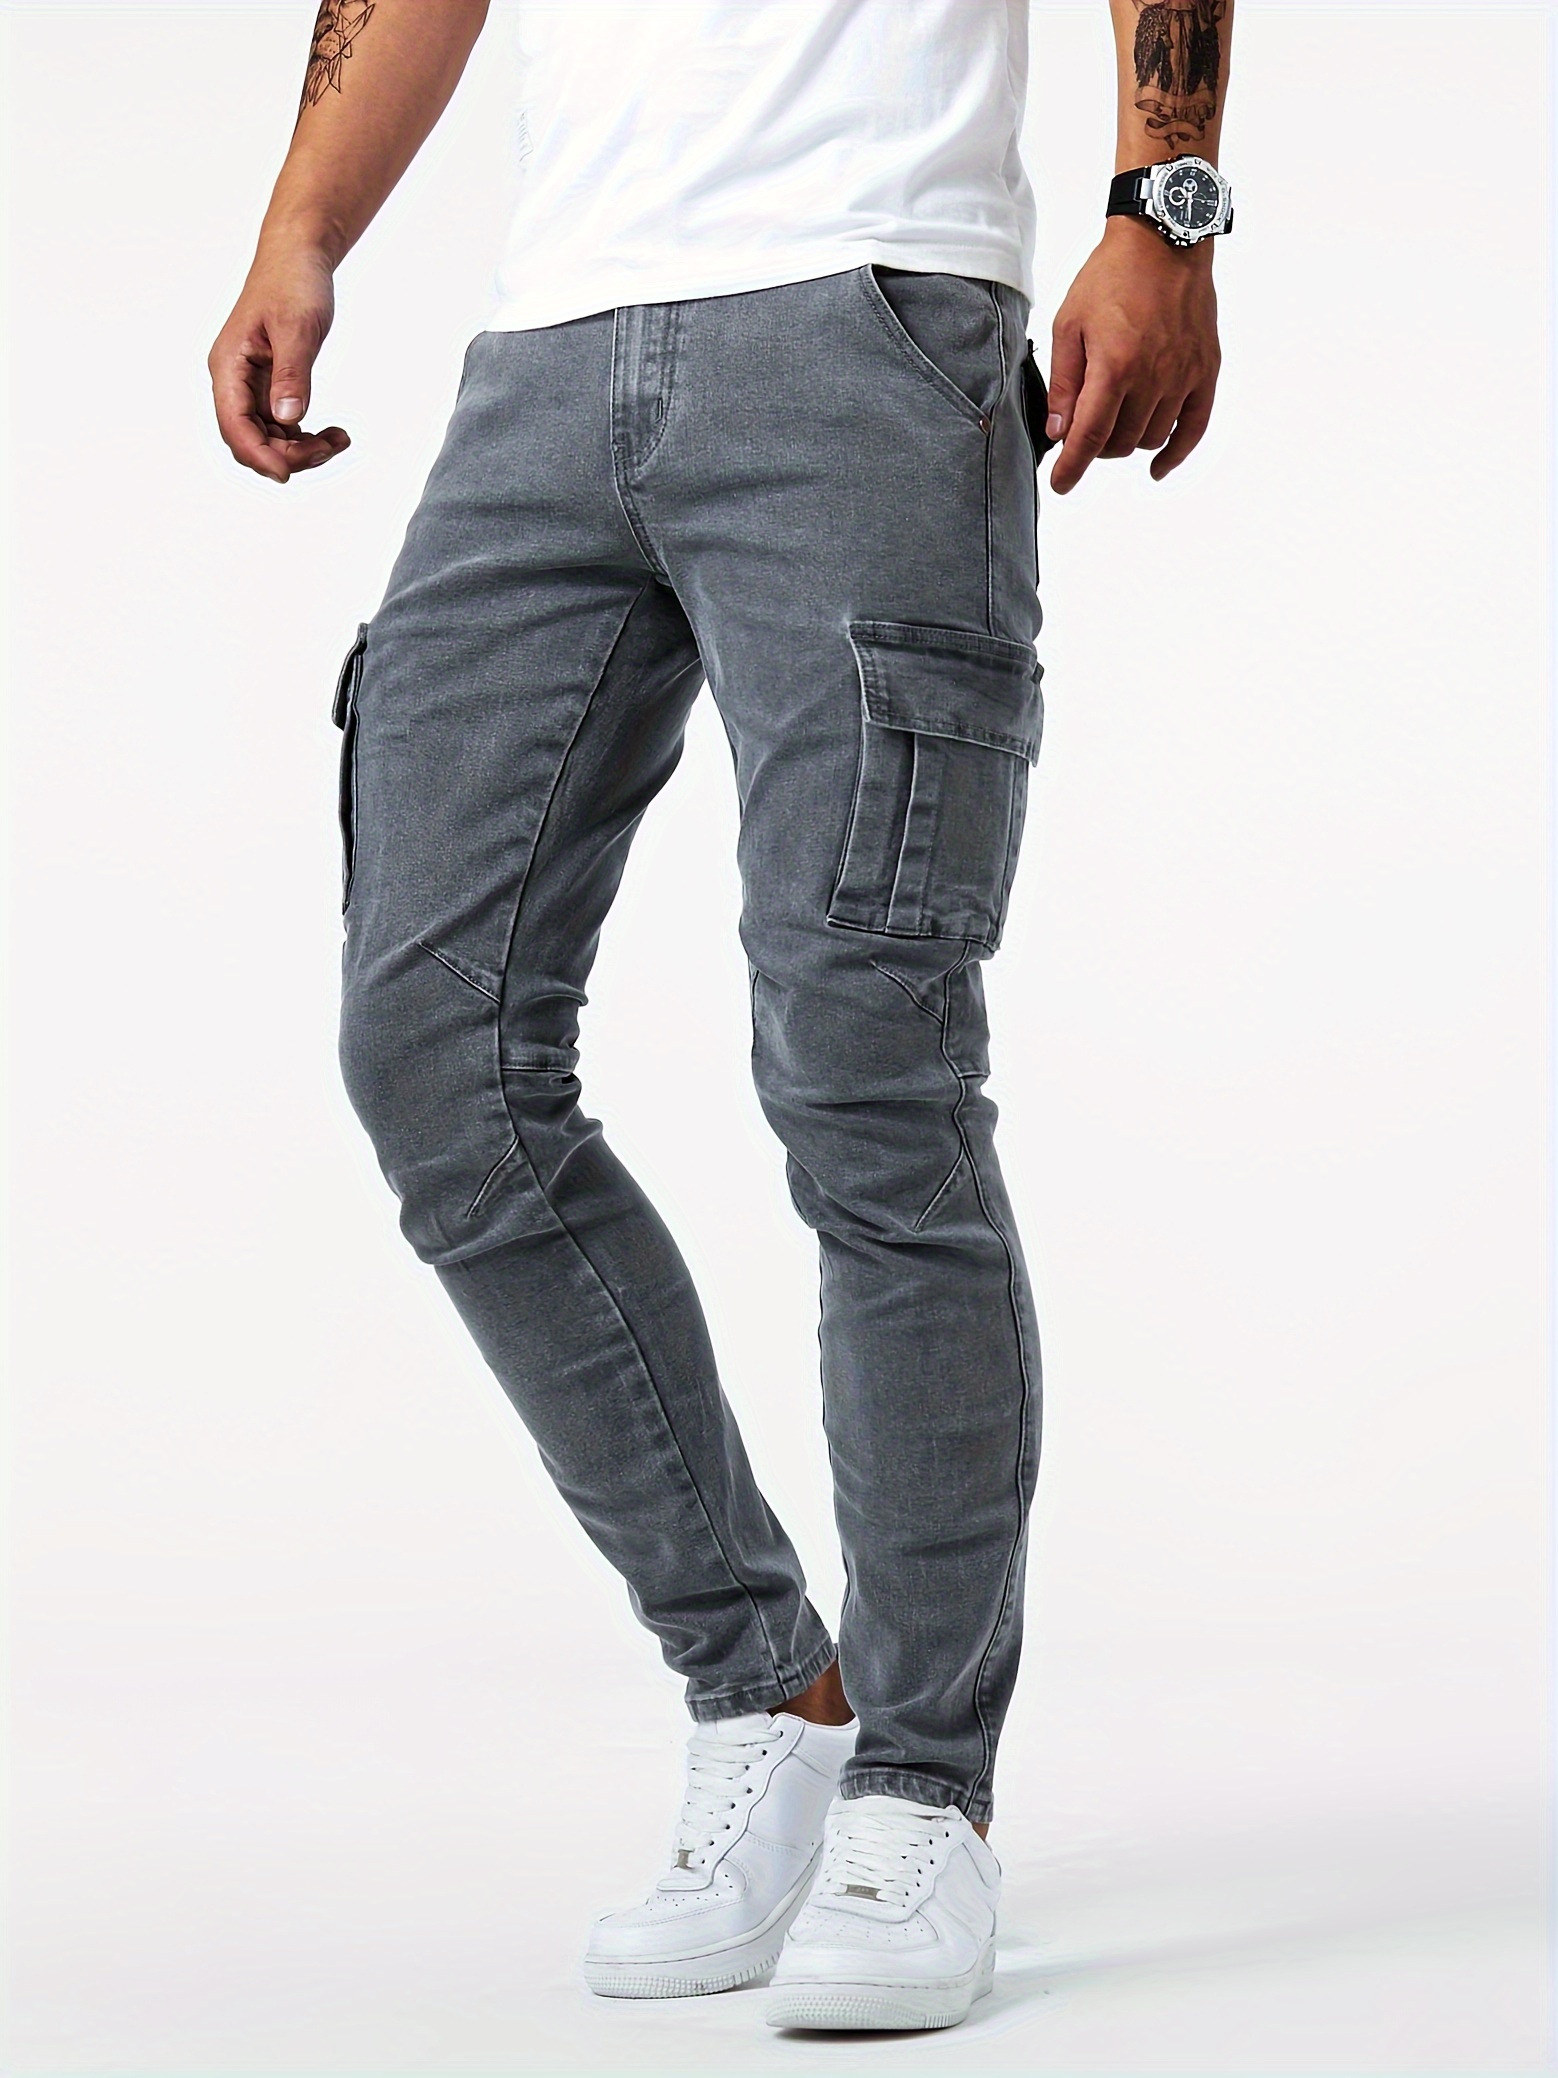 Moda Elastic Cargo Jeans Men Stretch Multi-pocket Skinny Jeans